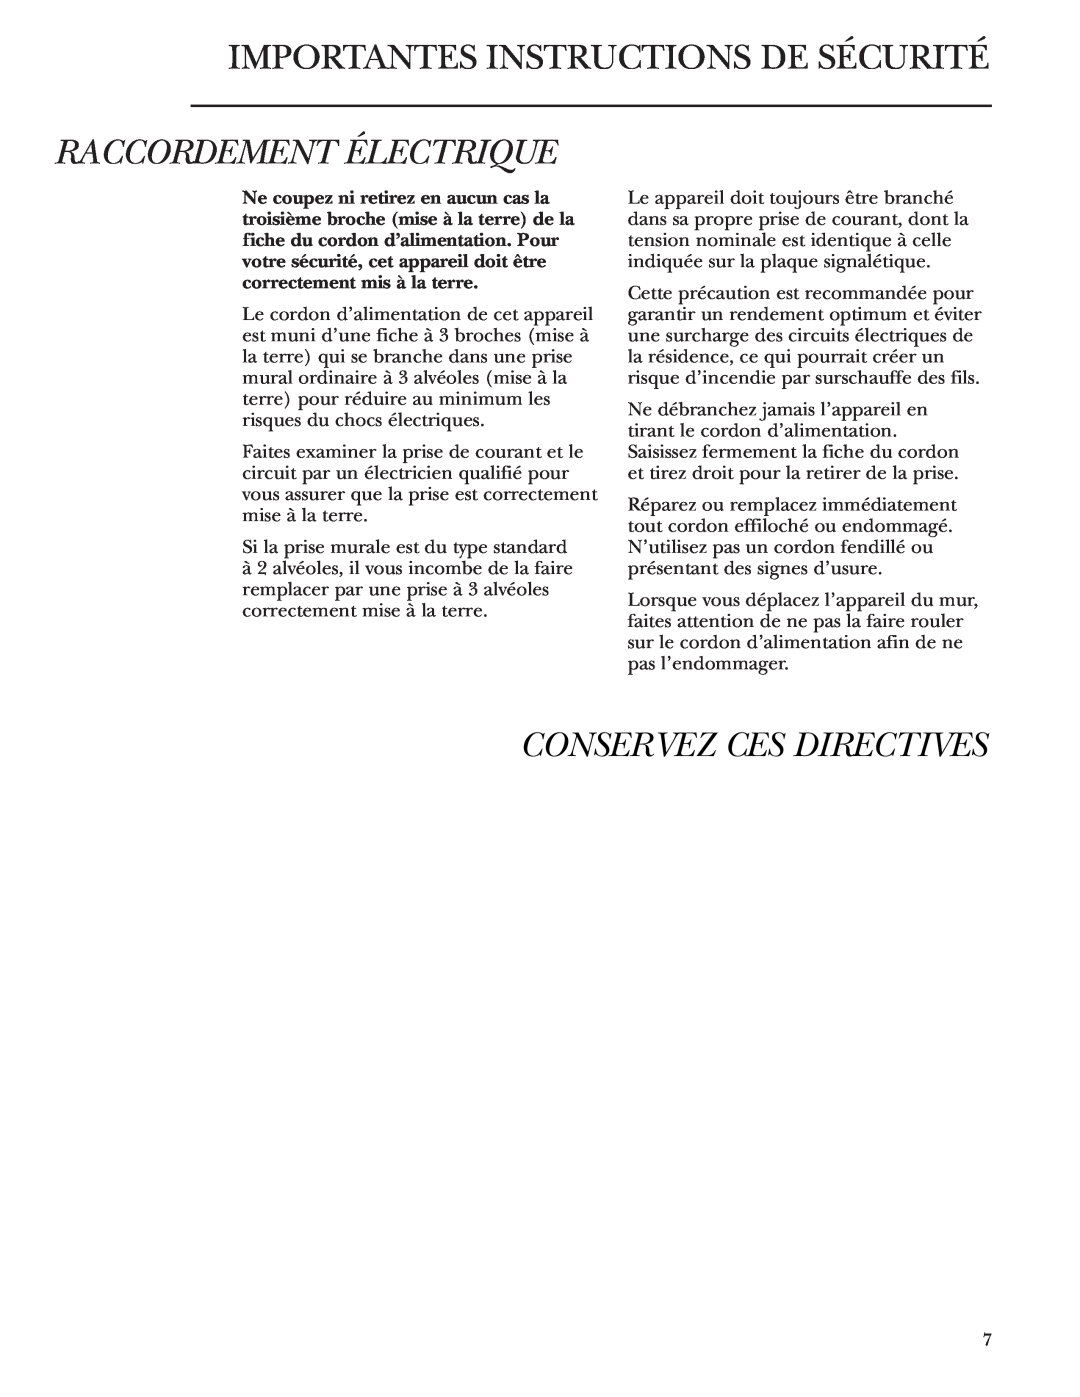 GE Monogram ZDBR240 owner manual Raccordement Électrique, Conservez Ces Directives, Importantes Instructions De Sécurité 